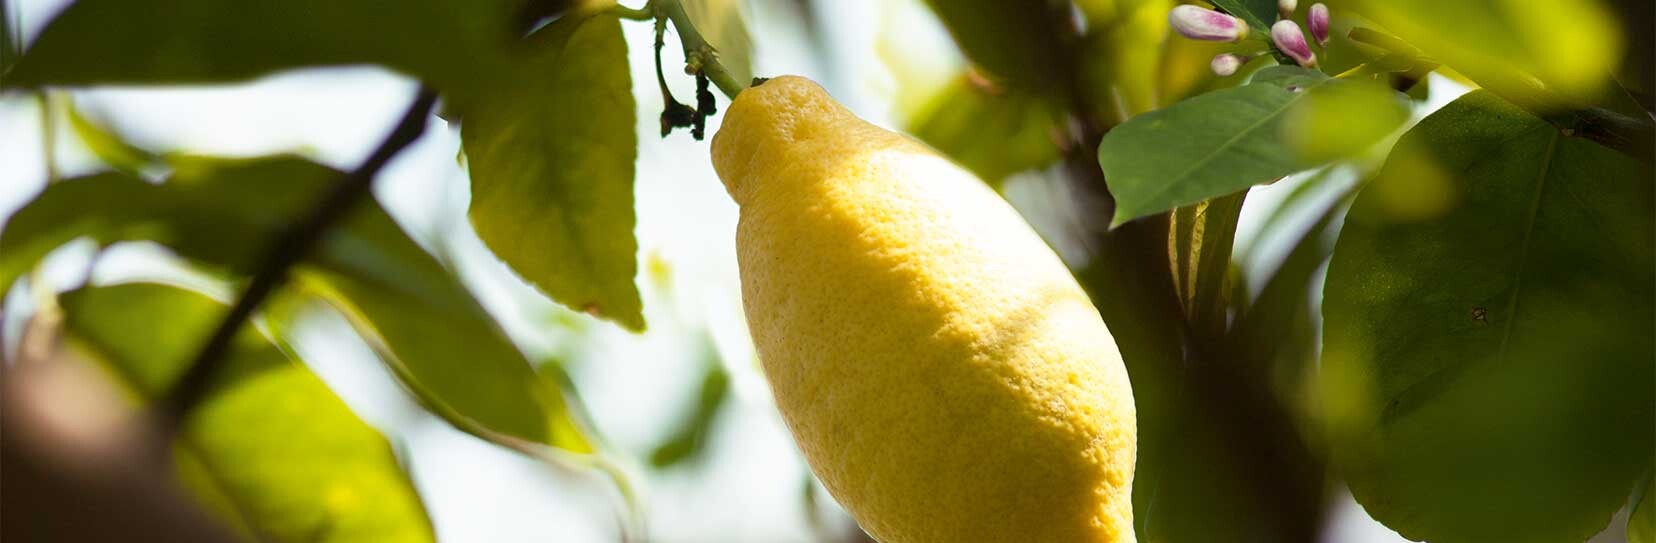 Limone - Citrus limon L.